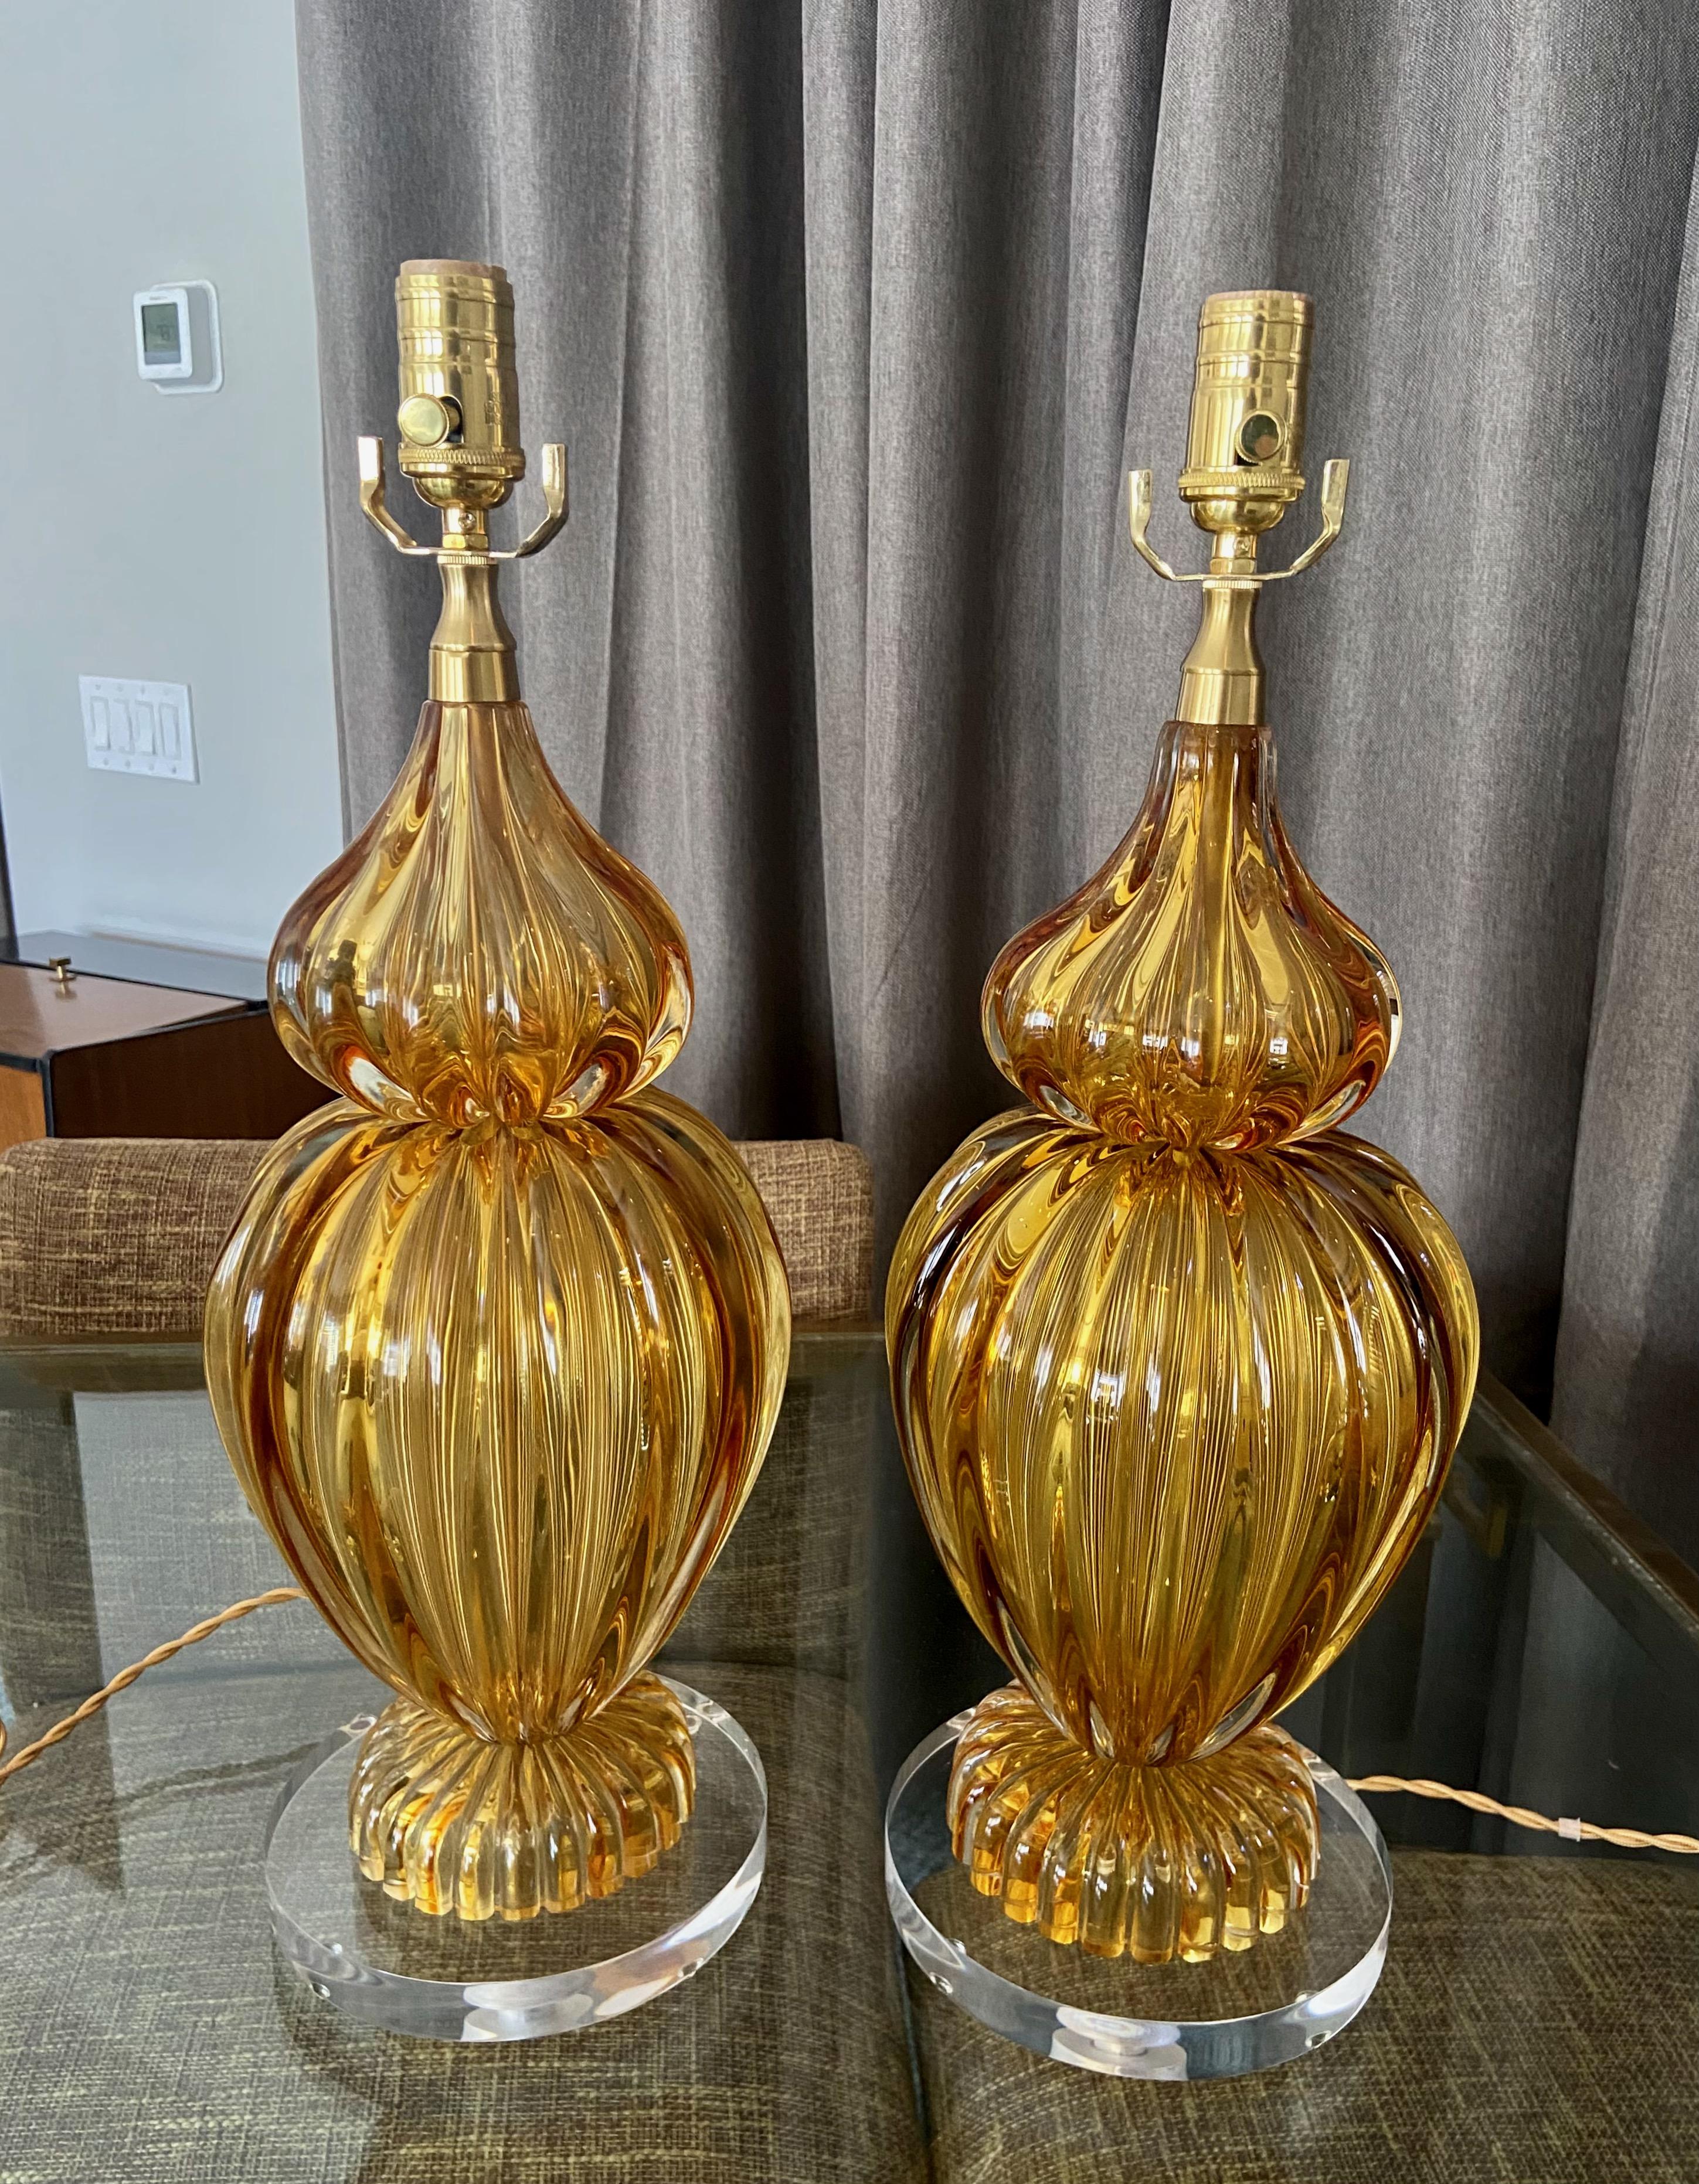 Paire de lampes de table Seguso en verre ambré strié soufflé à la main à Murano. Le verre a une riche couleur ambre doré et chaque lampe pèse plus de 14 livres. 
montés sur des bases acryliques personnalisées plus récentes. Chaque pièce est